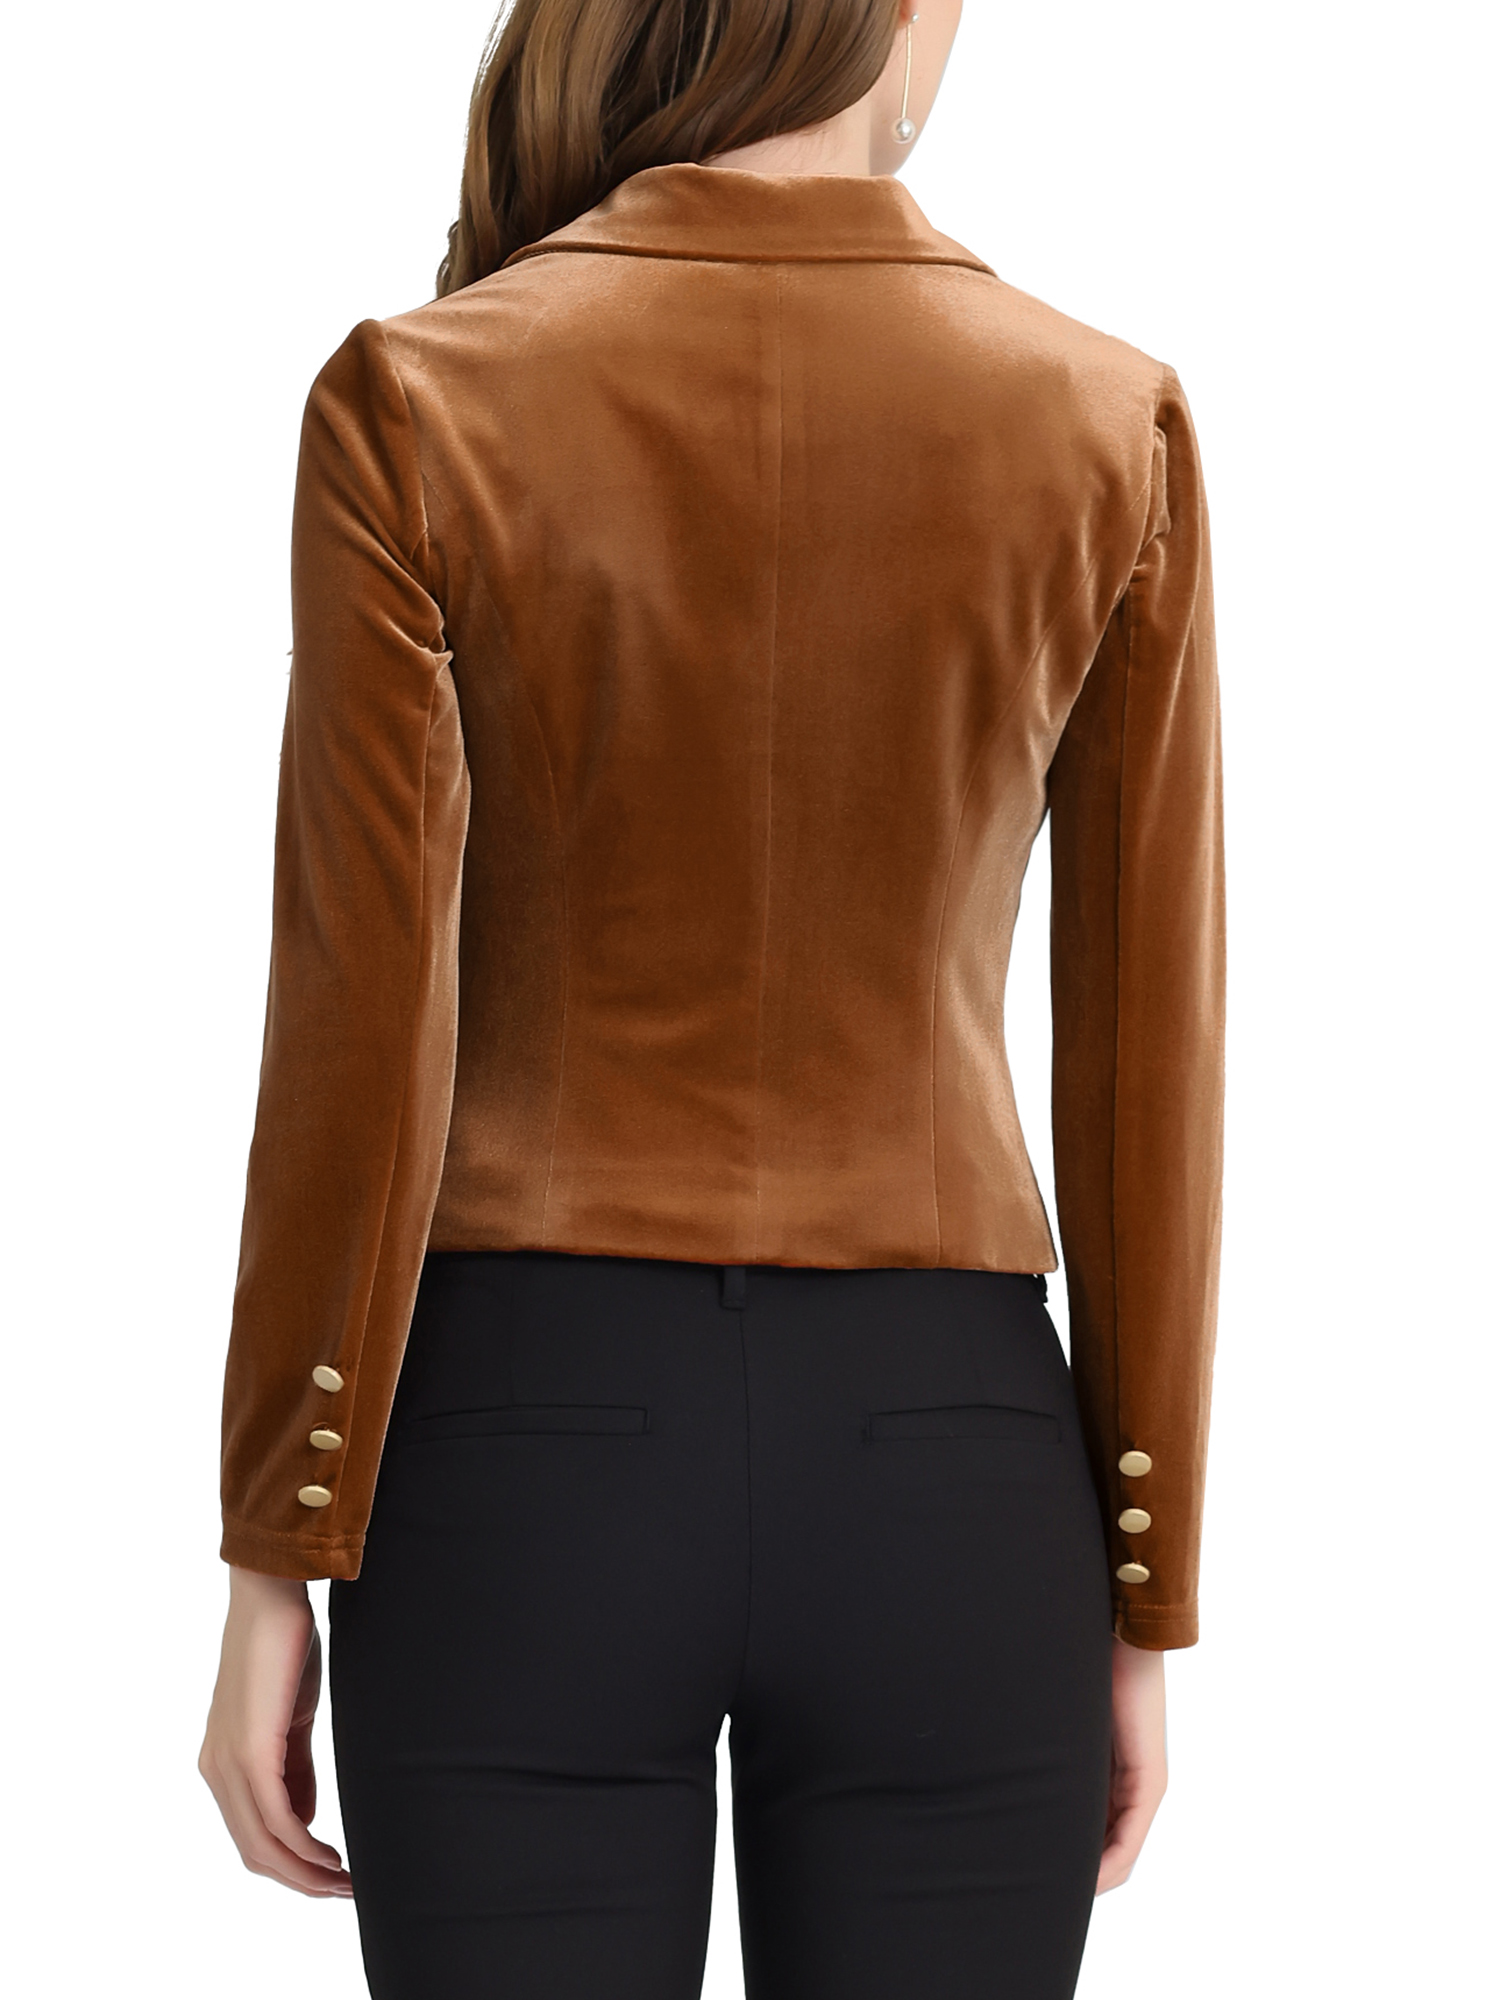 Unique Bargains Women's Button Front Velvet Blazer Lapel Office Crop Suit Jacket S Brown - image 3 of 6